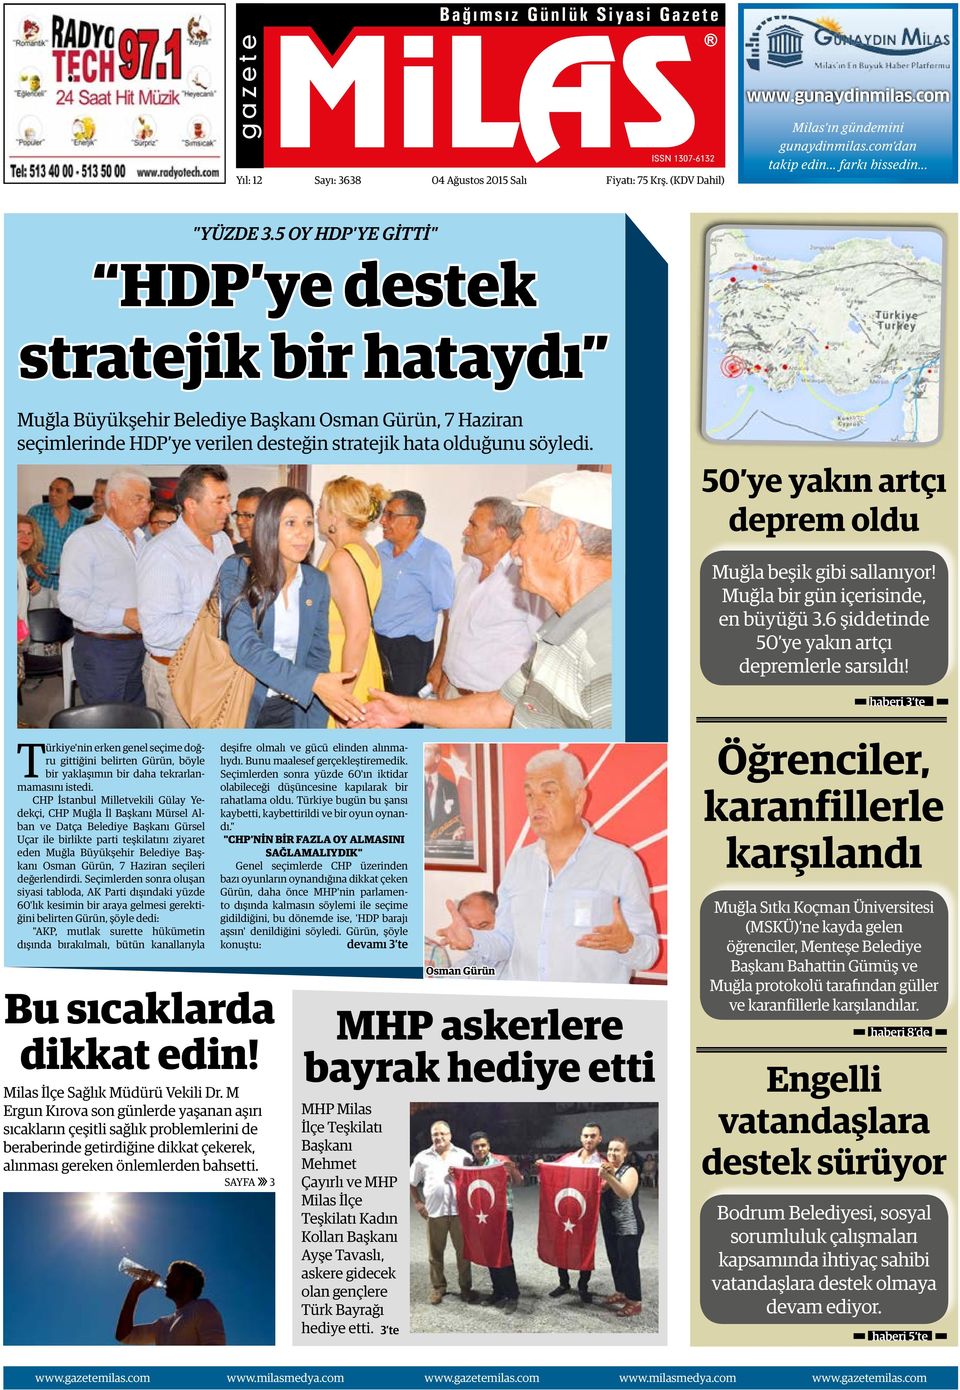 5 OY HDP'YE GİTTİ" HDP ye destek stratejik bir hataydı Muğla Büyükşehir Belediye Başkanı Osman Gürün, 7 Haziran seçimlerinde HDP ye verilen desteğin stratejik hata olduğunu söyledi.